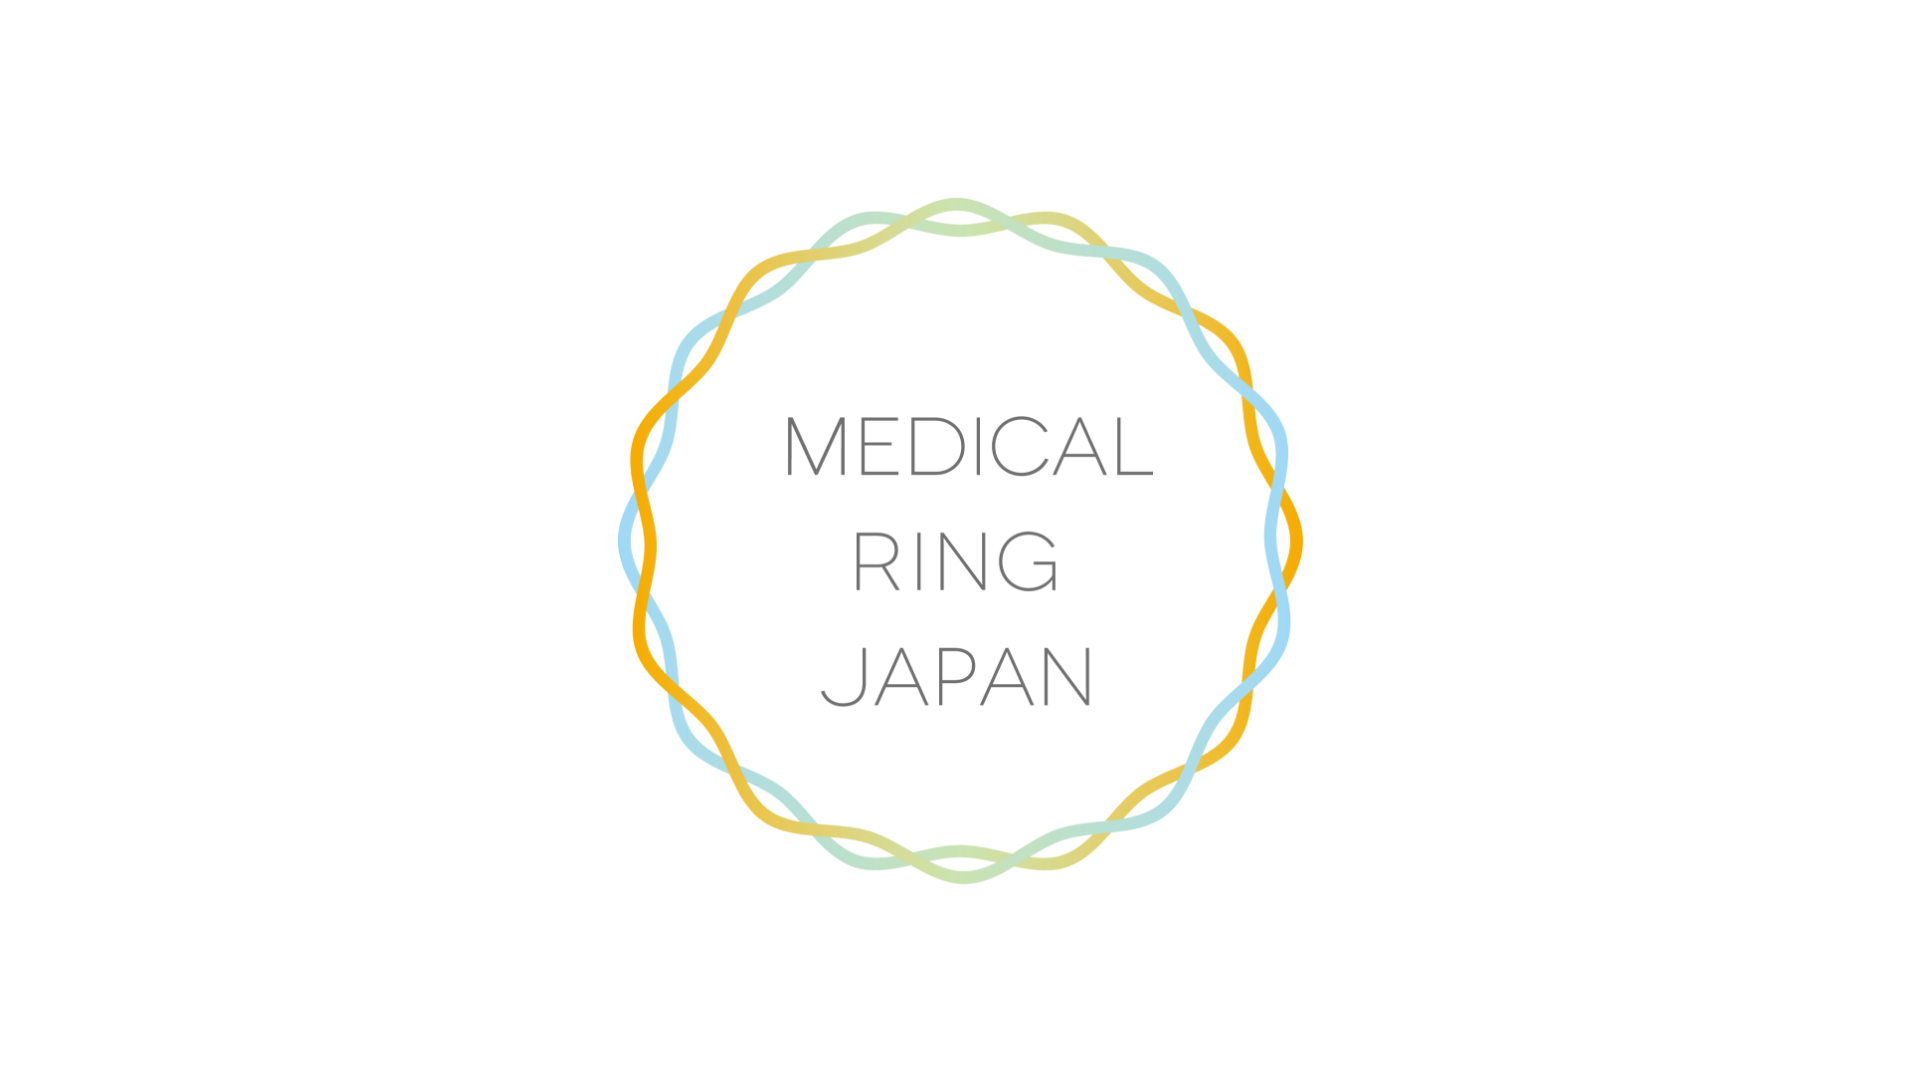 MEDICAL RING JAPAN